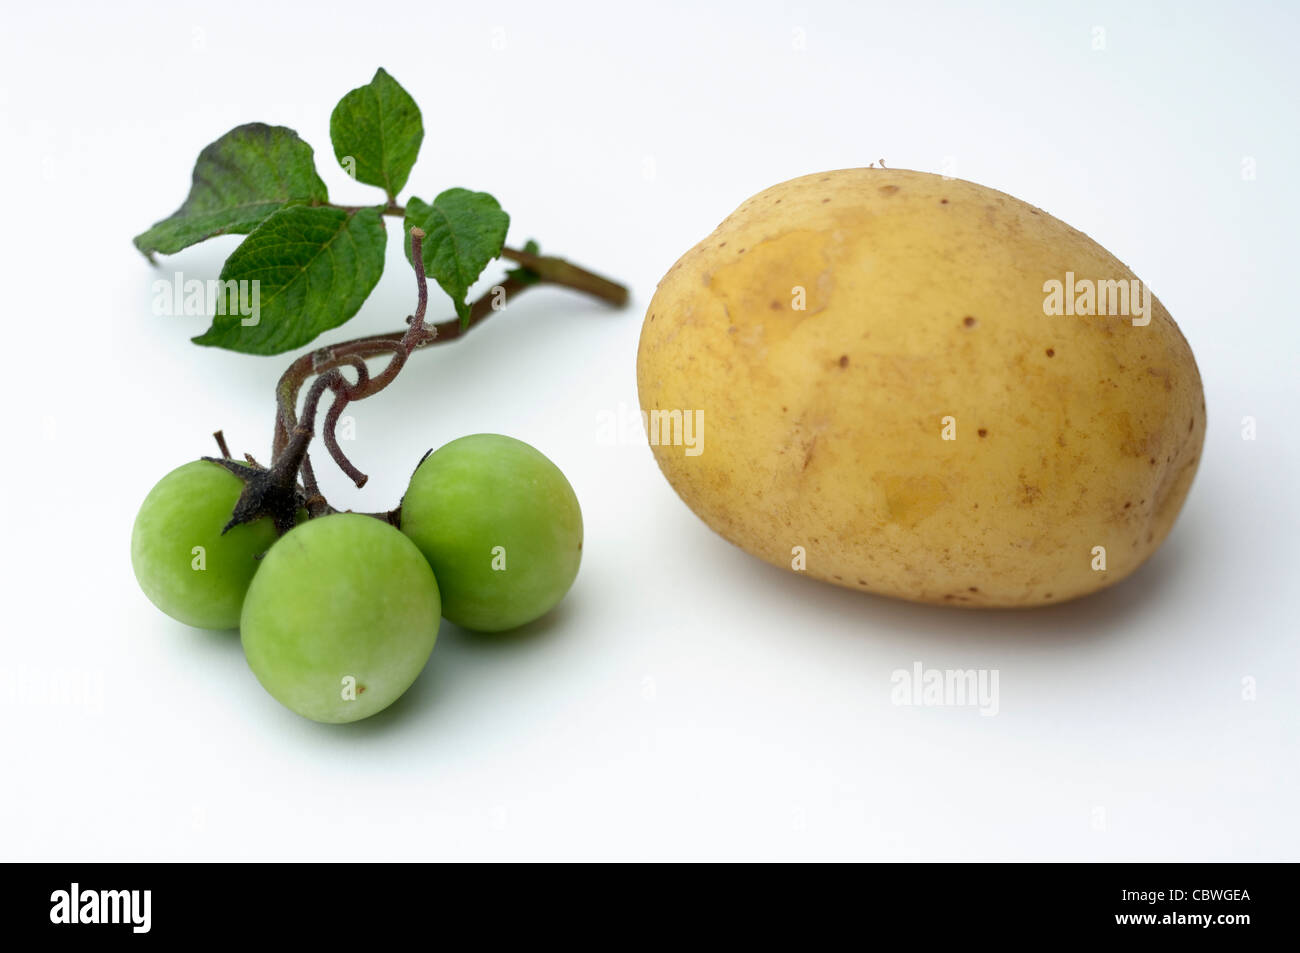 La pomme de terre (Solanum tuberosum). Twig avec petits fruits verts et tubercule comestible. Studio photo sur un fond blanc. Banque D'Images